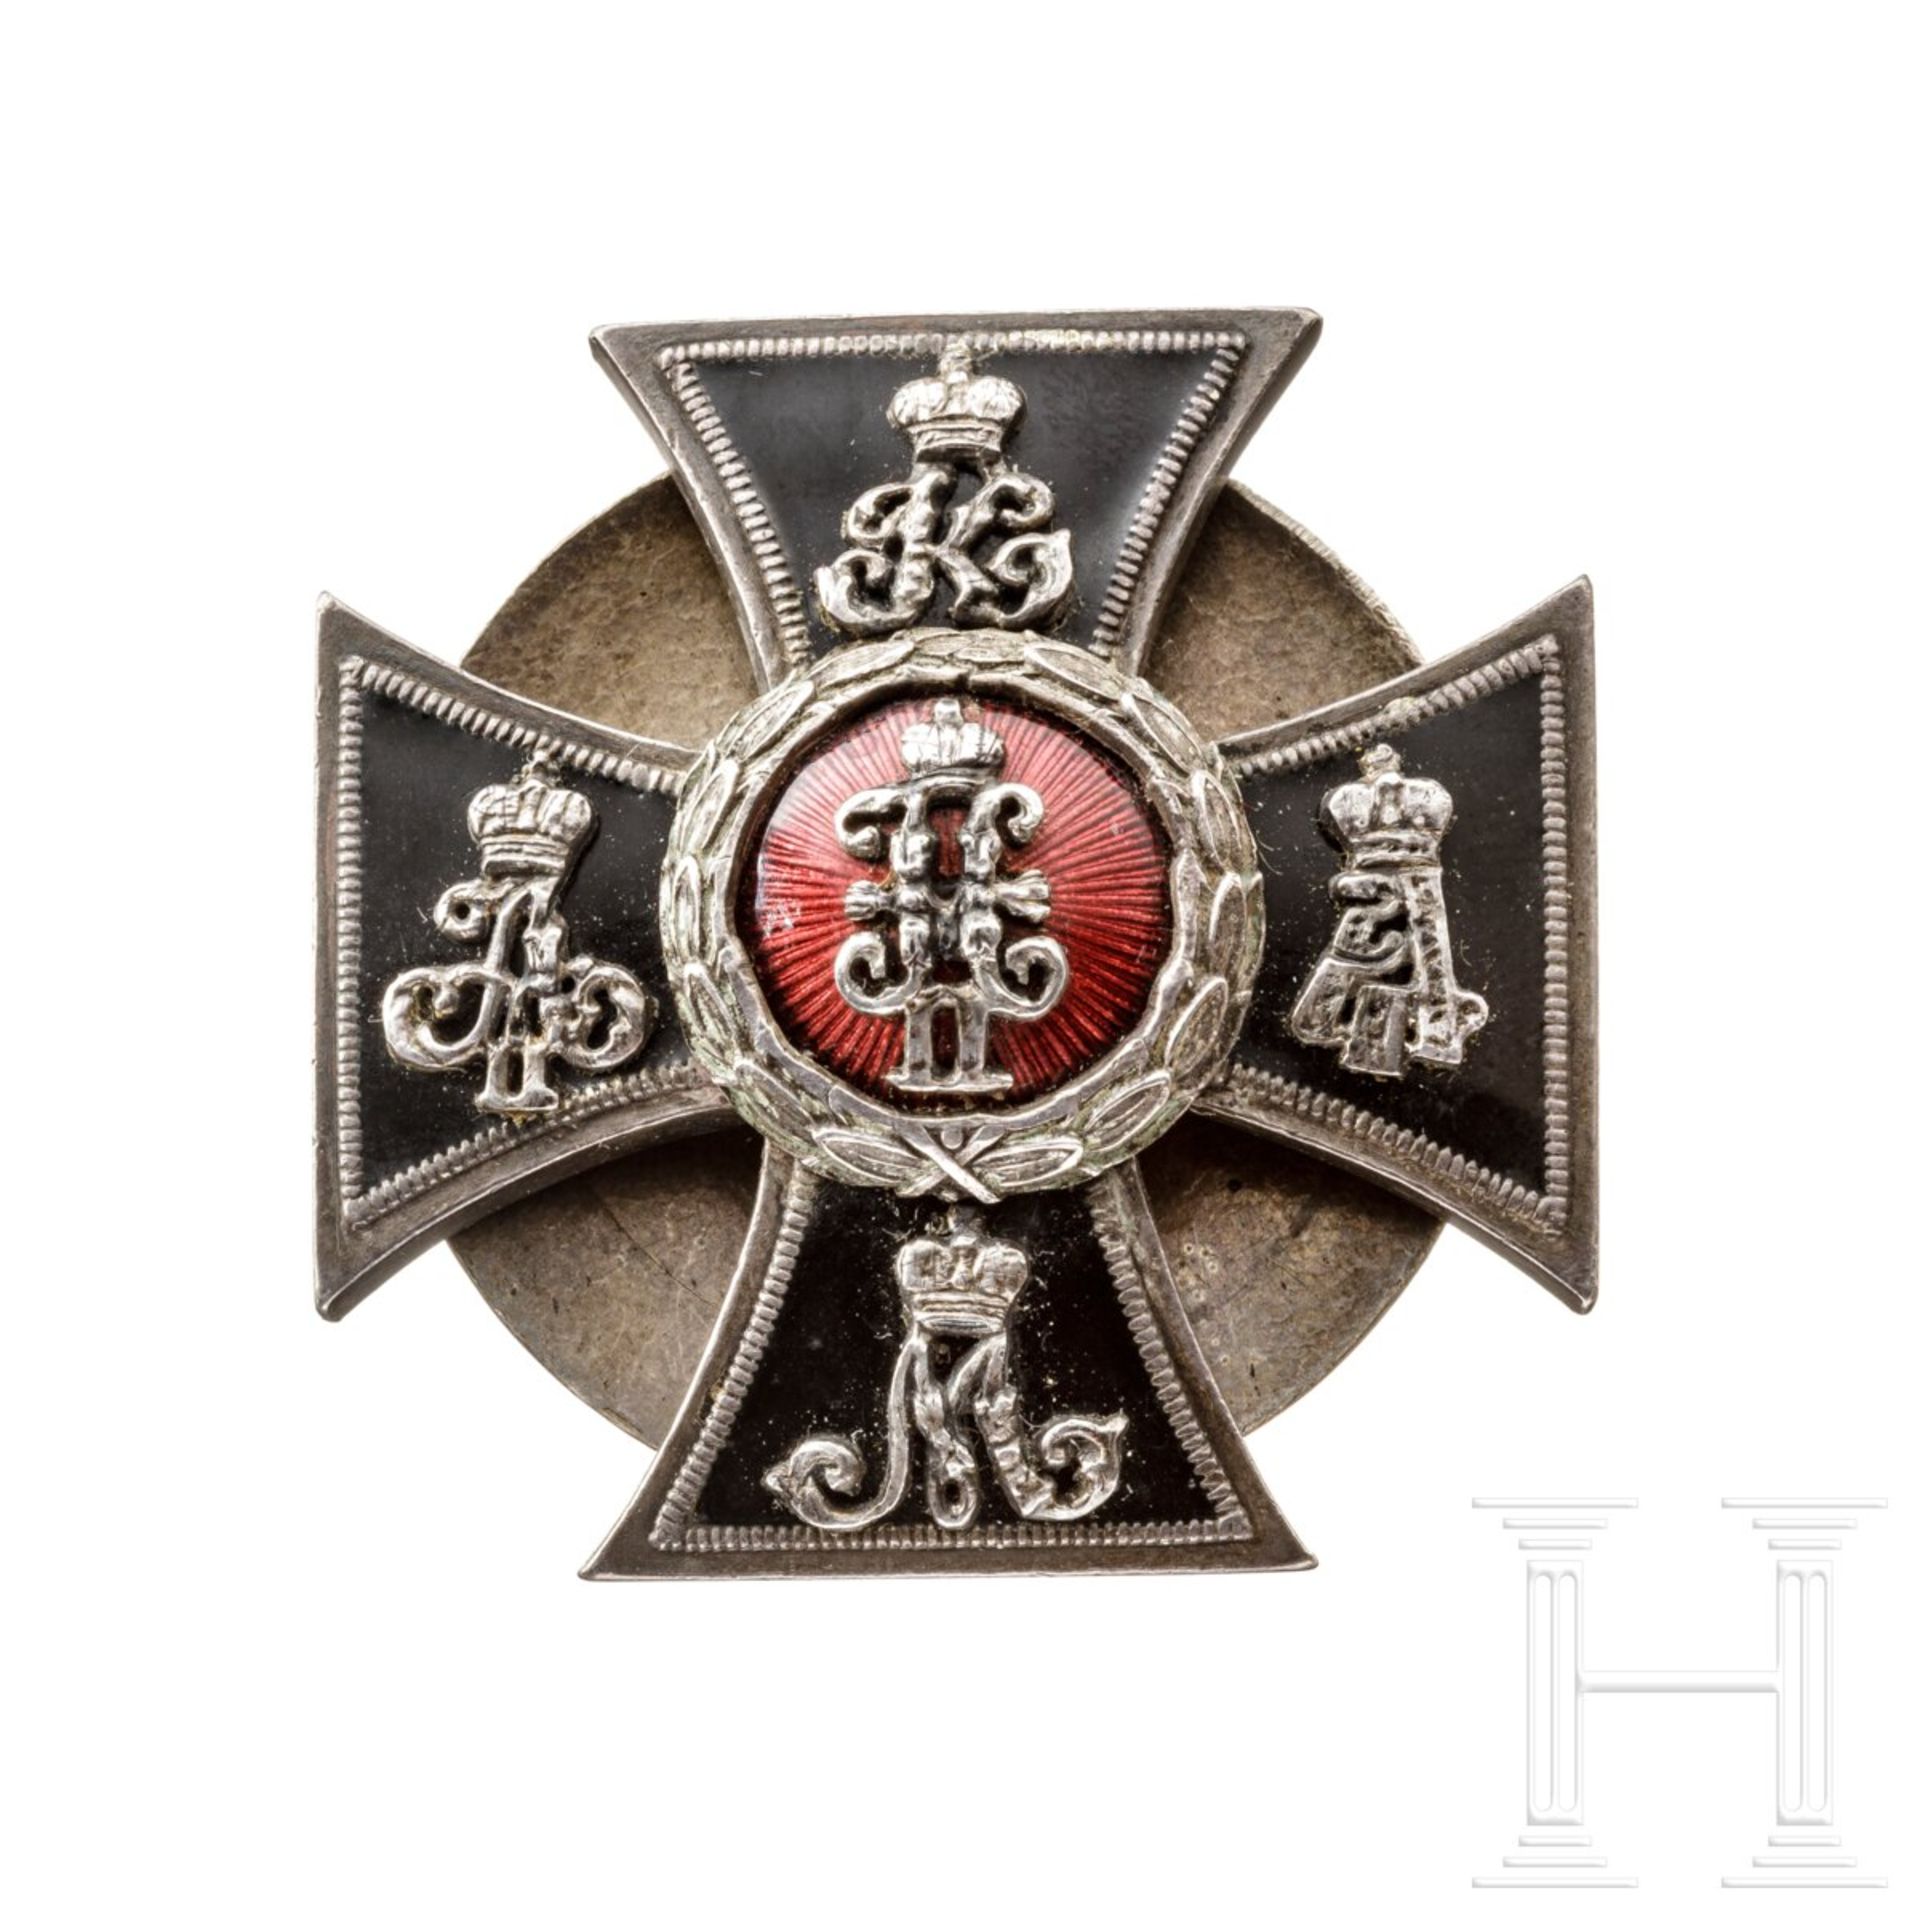 Jubiläumsabzeichen des Leibgarde-Ulanen-Regiments, Russland, um 1910/15